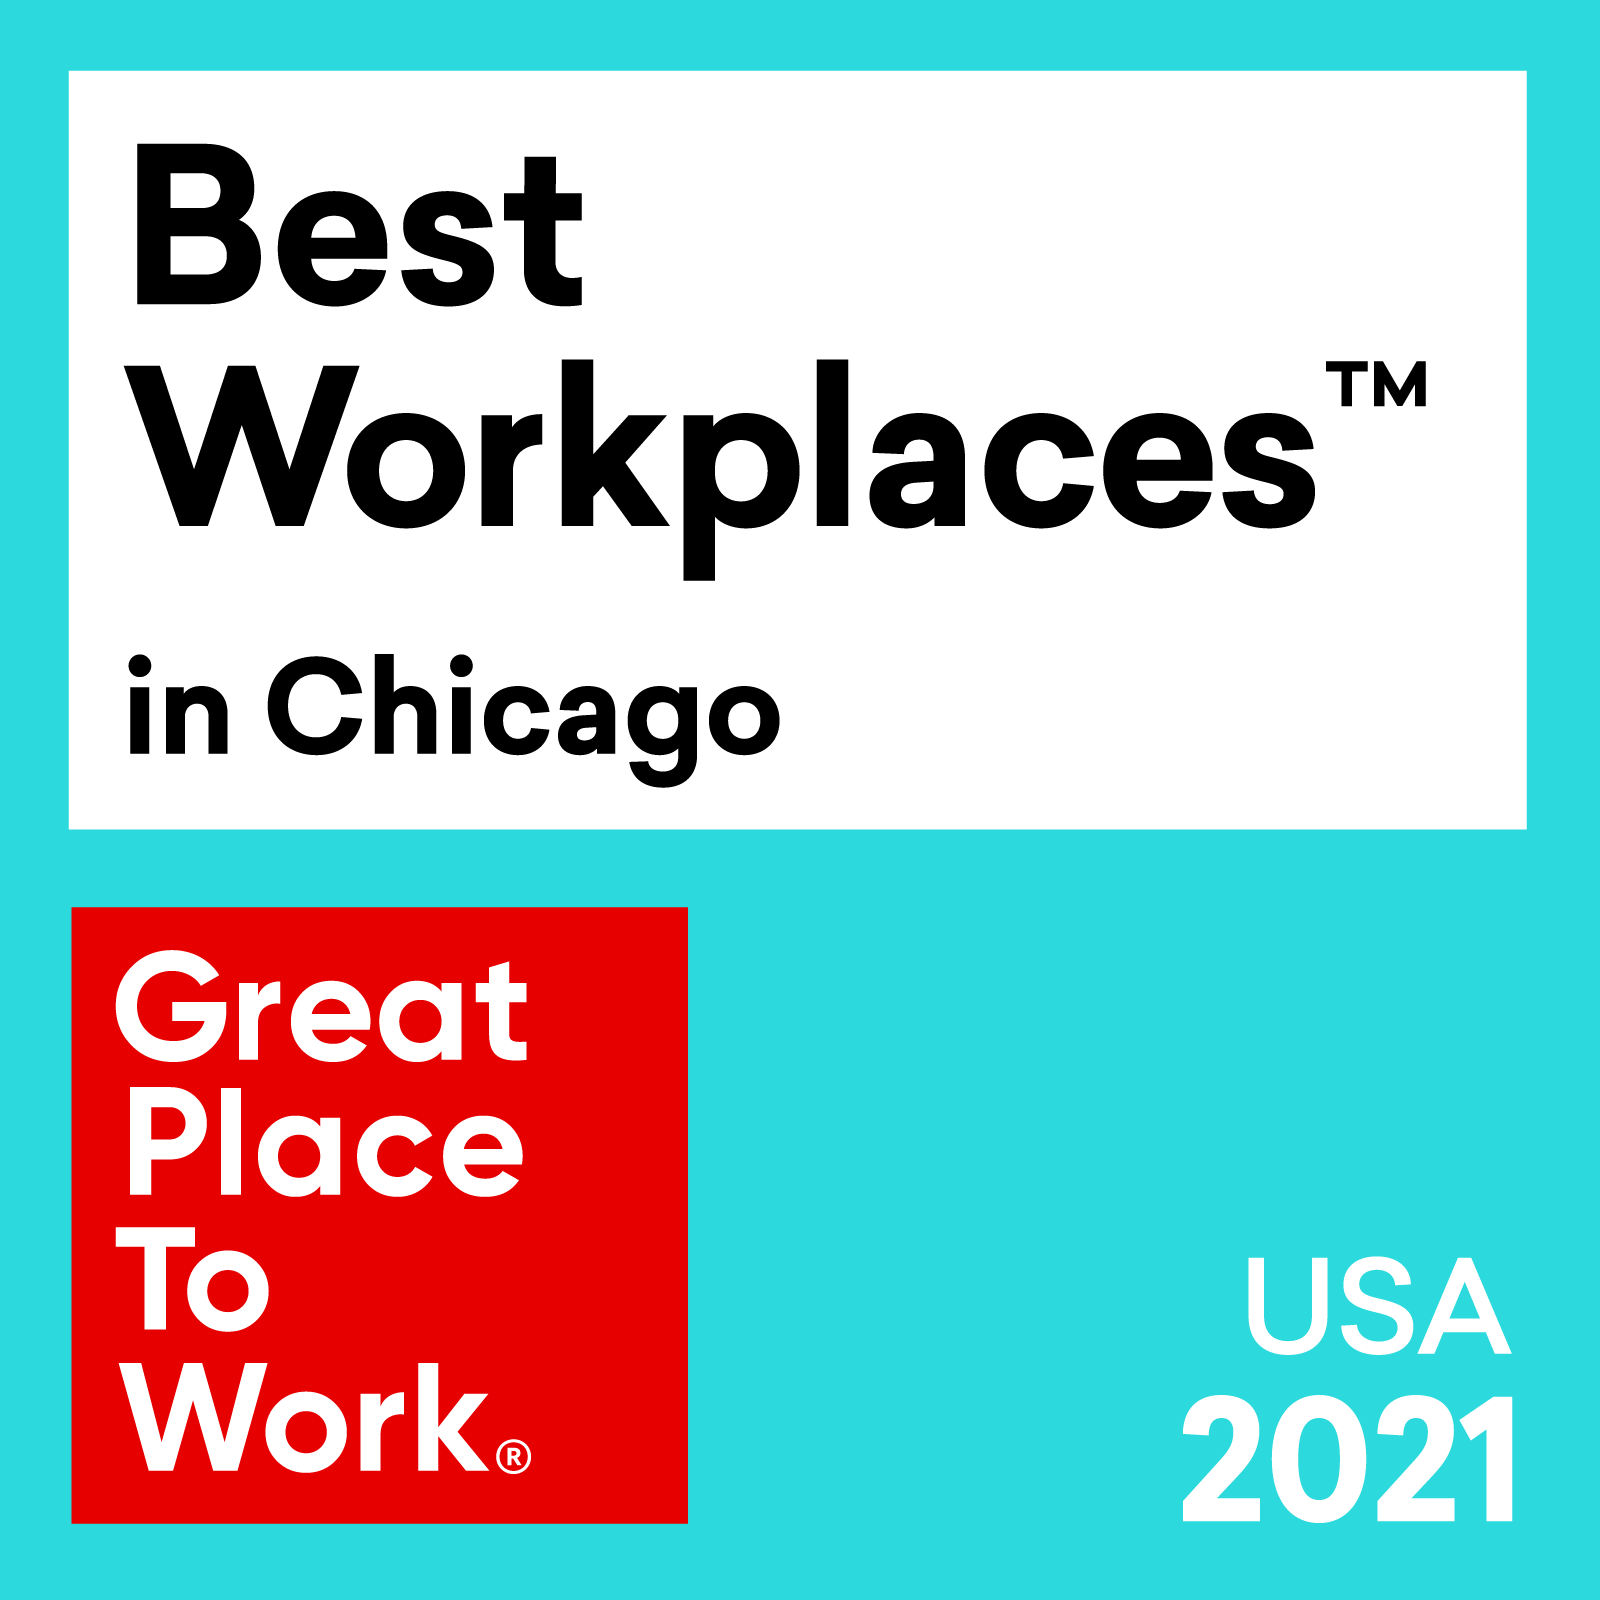 Premio Best Workplaces™️ in Chicago de 2021 en los Estados Unidos, otorgado por Great Place To Work